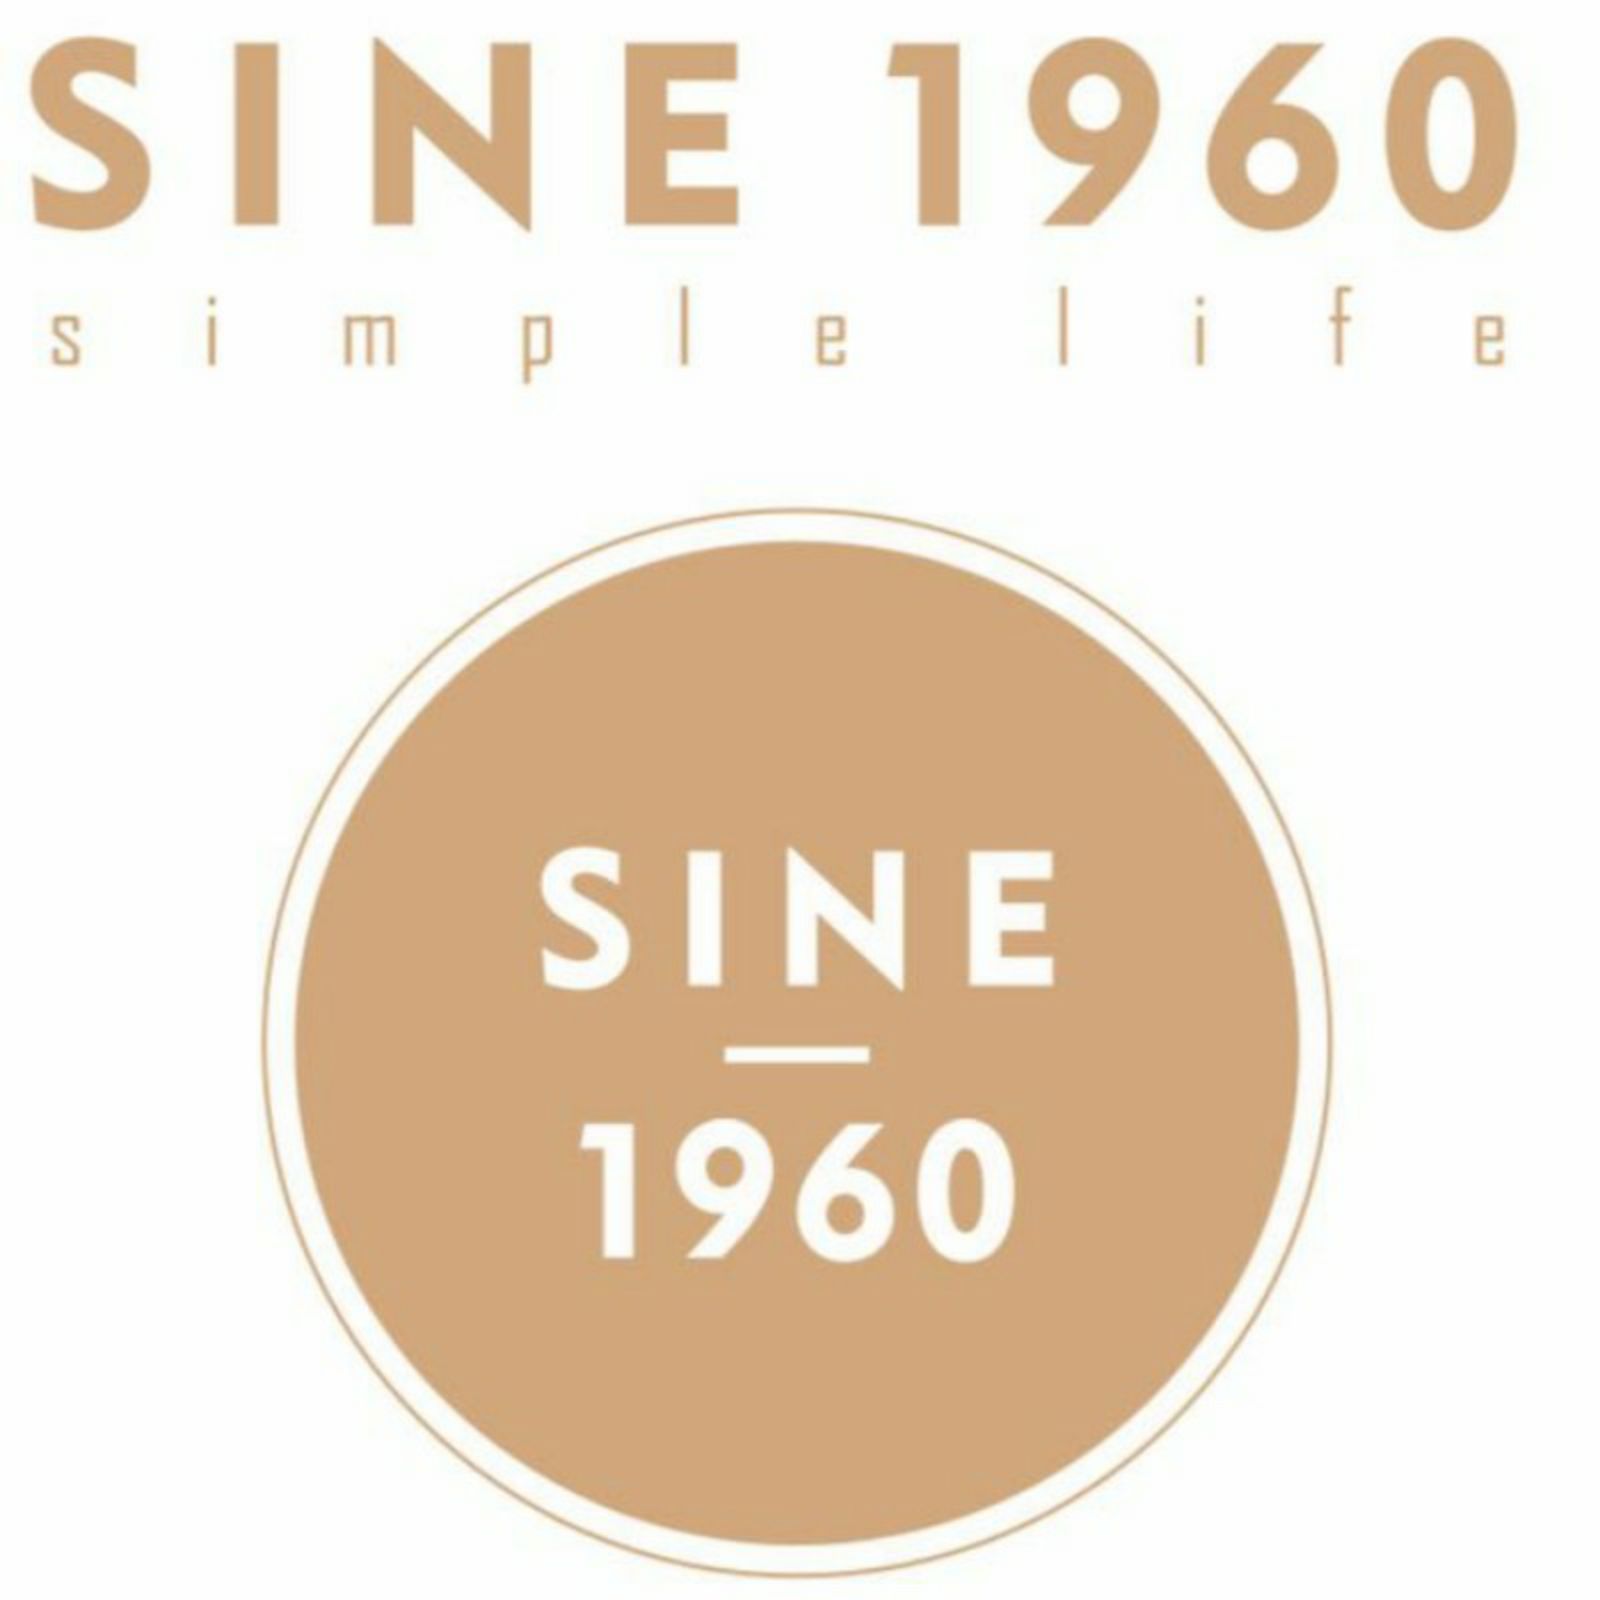 SINE1960